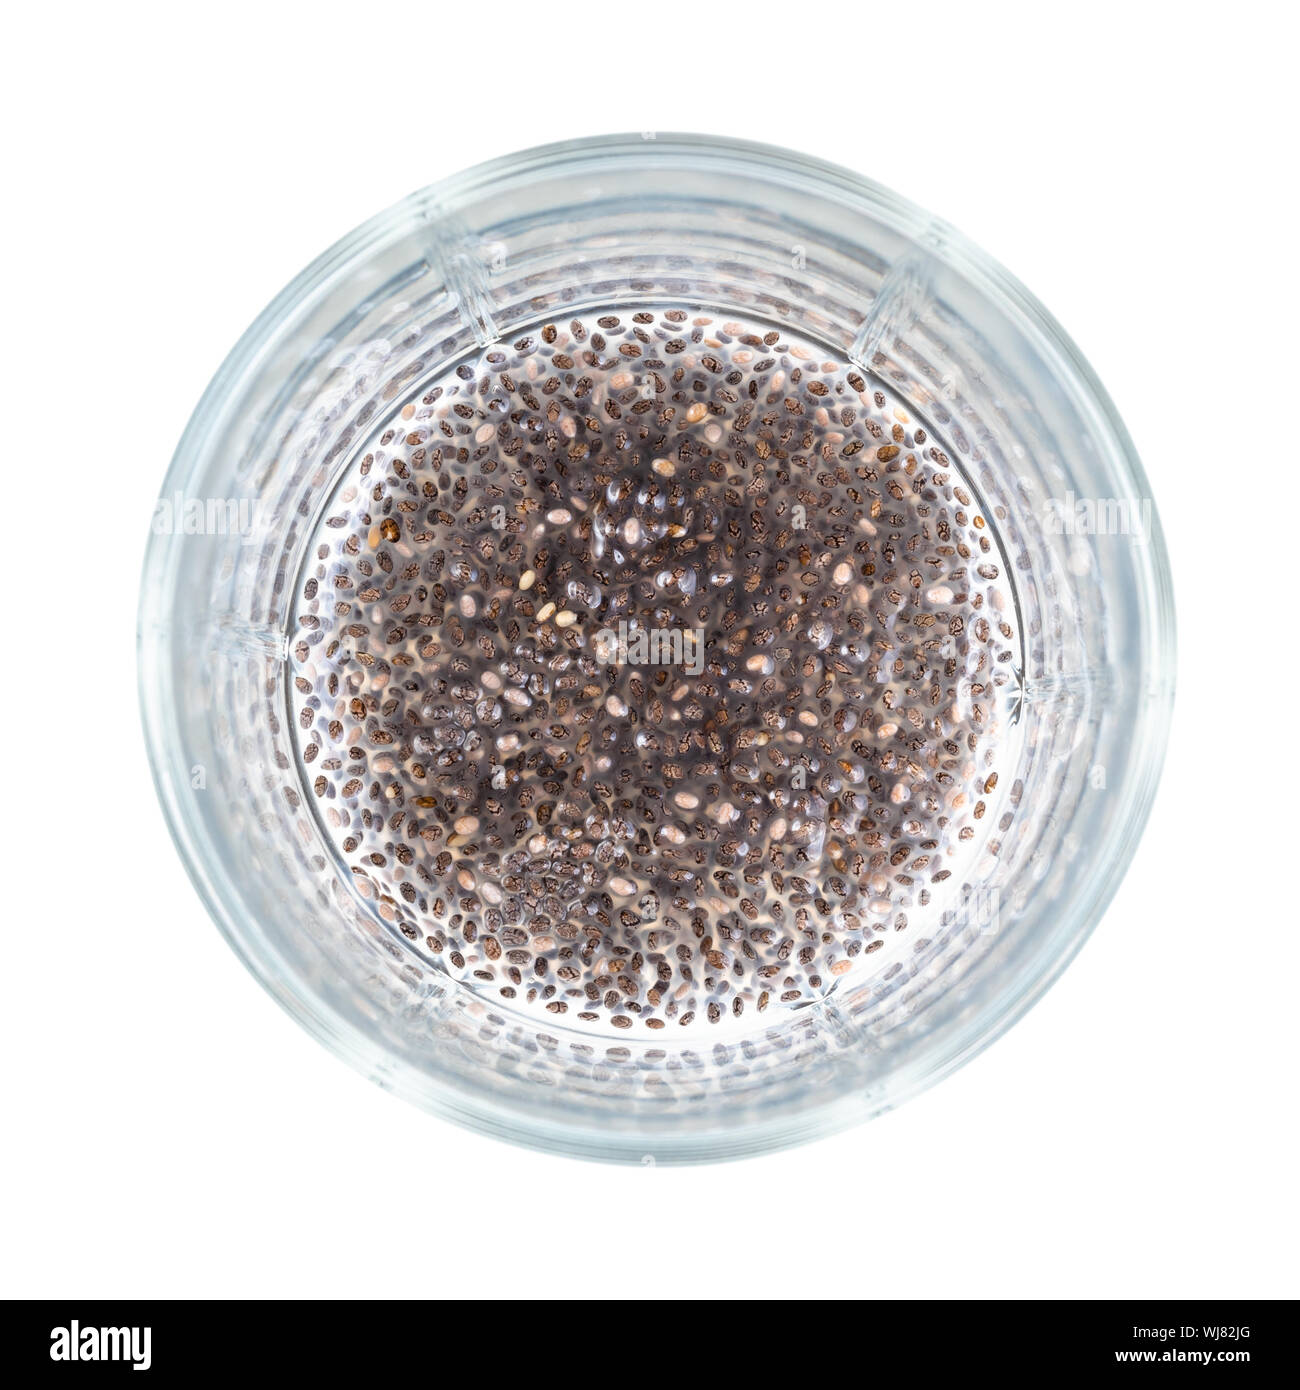 Blick von oben auf die Chia Samen absorbiert Wasser und trinken mit gallertartige Konsistenz an der Unterseite des Becherglas Ausschnitt auf weißem Hintergrund Stockfoto